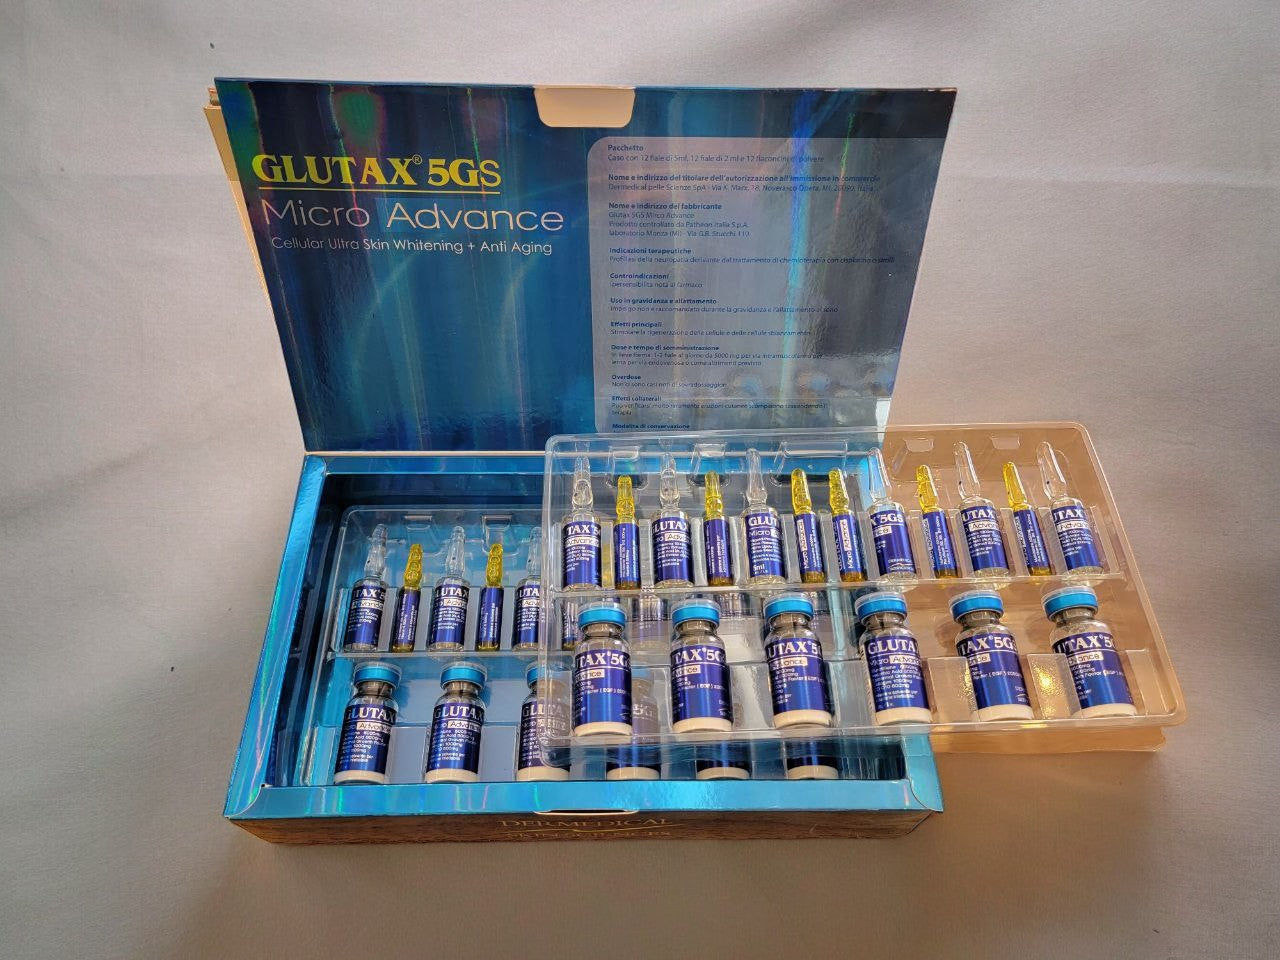 Glutax 5gs micro advance 12vials